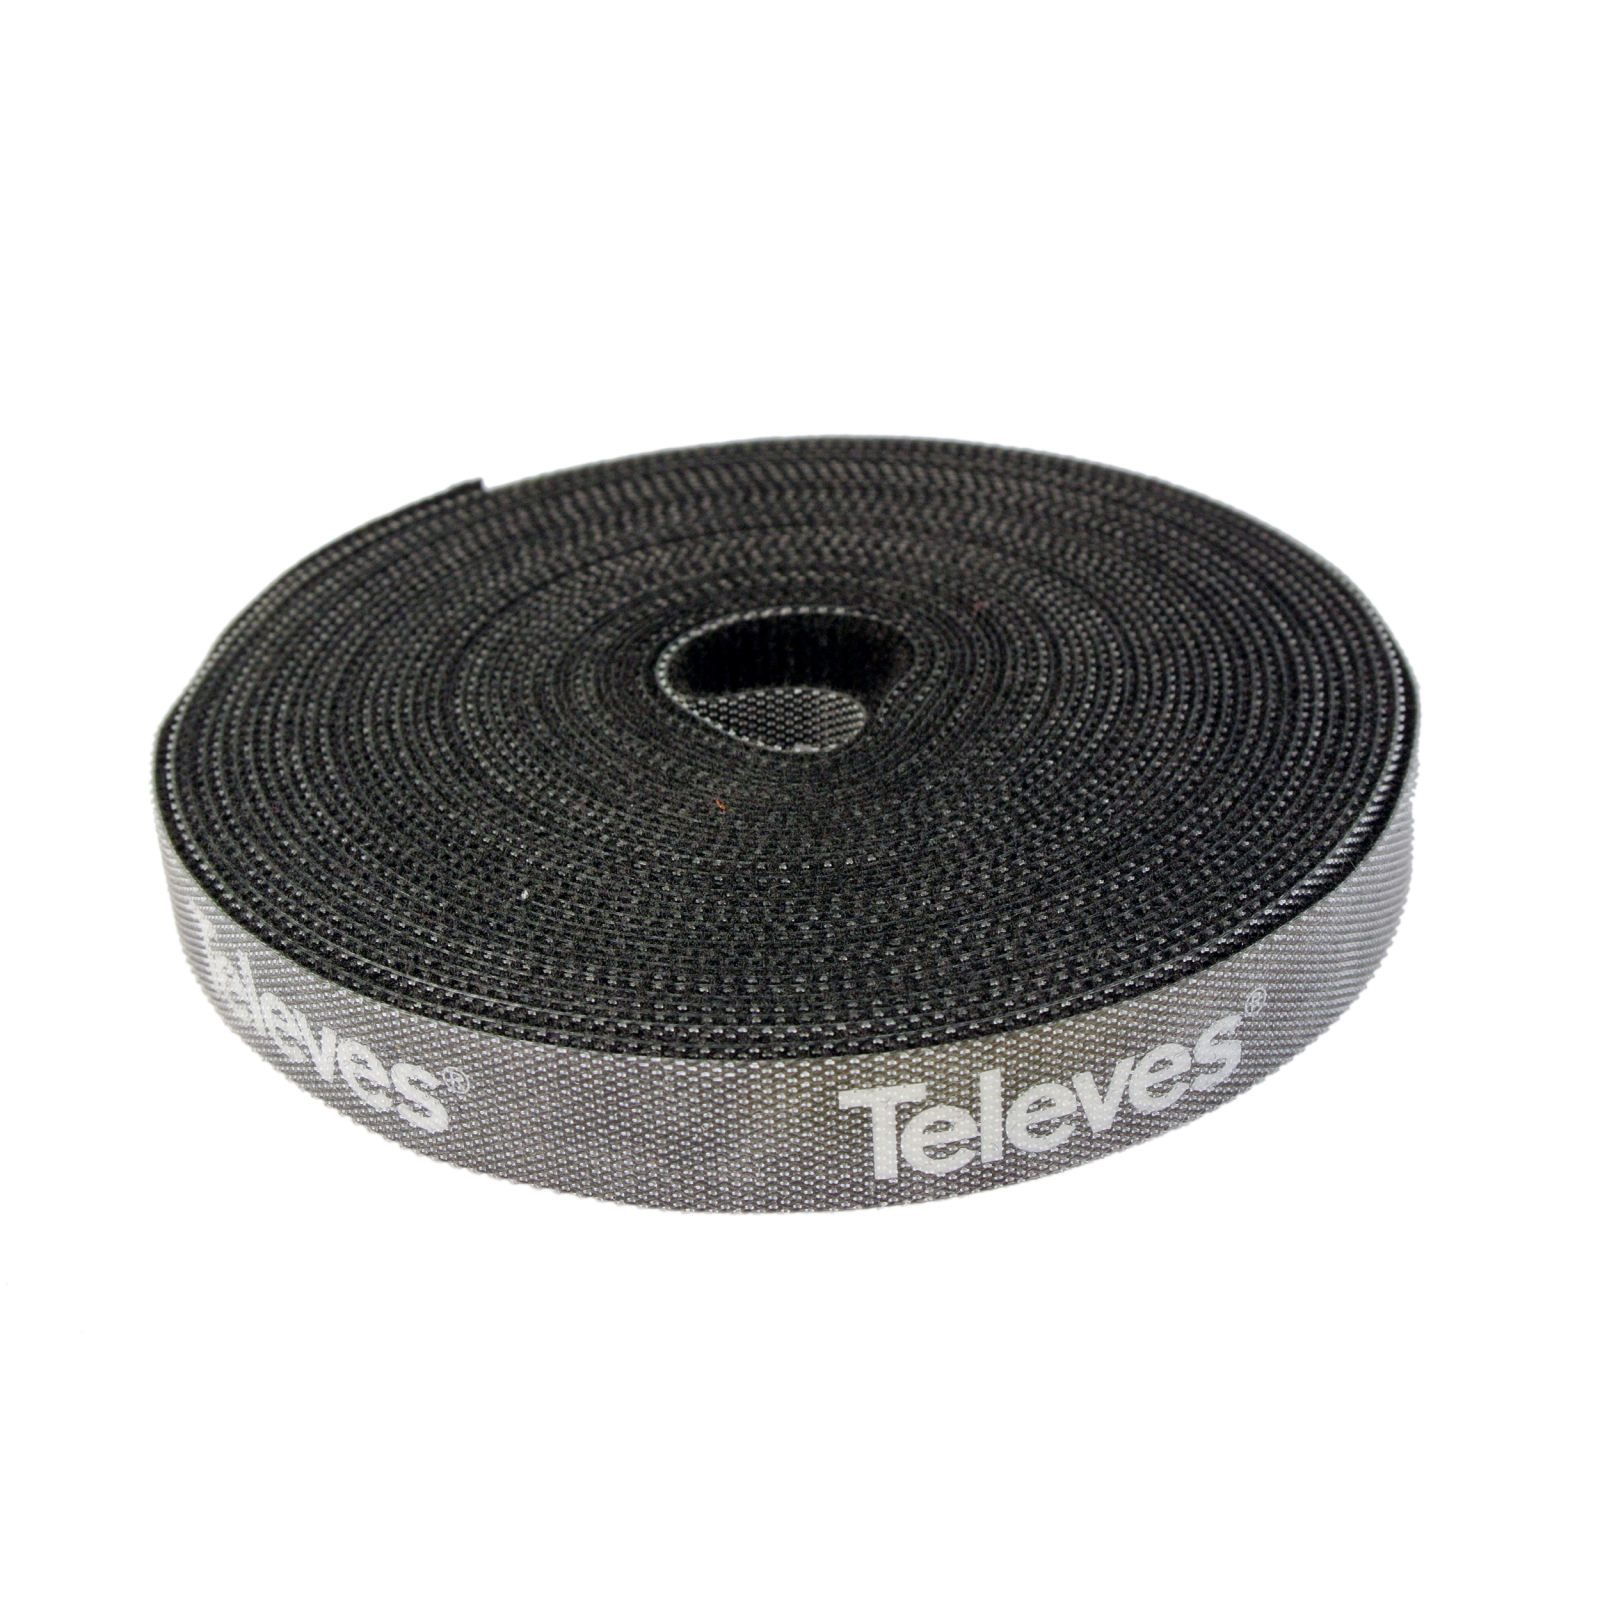 Nylonklettband schwarz mit Televes-Logo Breite 15mm, Länge 8m